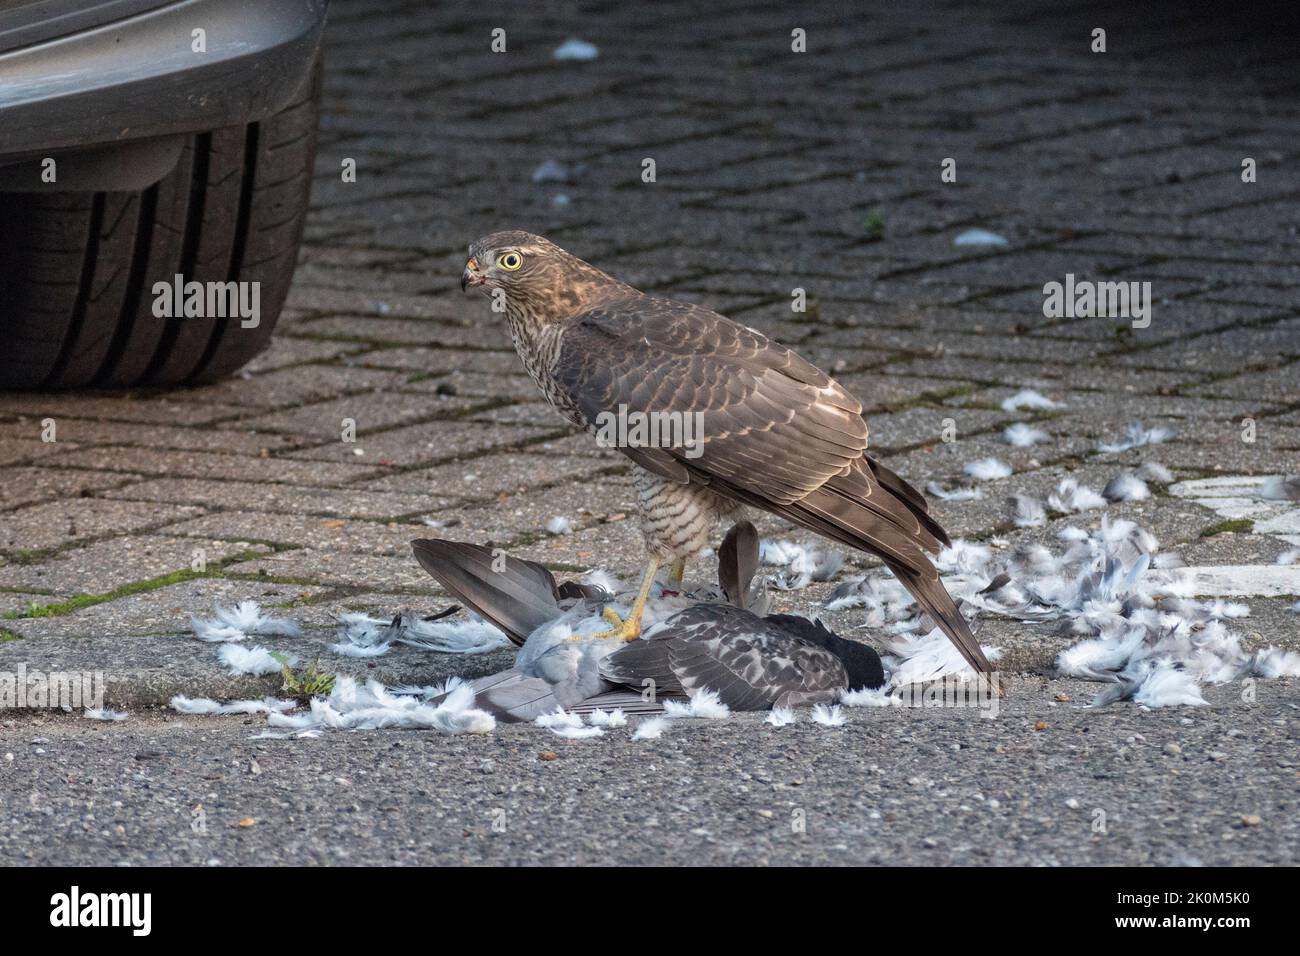 Gros plan d'un sparrowhawk eurasien (Accipiter nisus) se nourrissant d'un pigeon mort dans un environnement urbain, Royaume-Uni. Banque D'Images